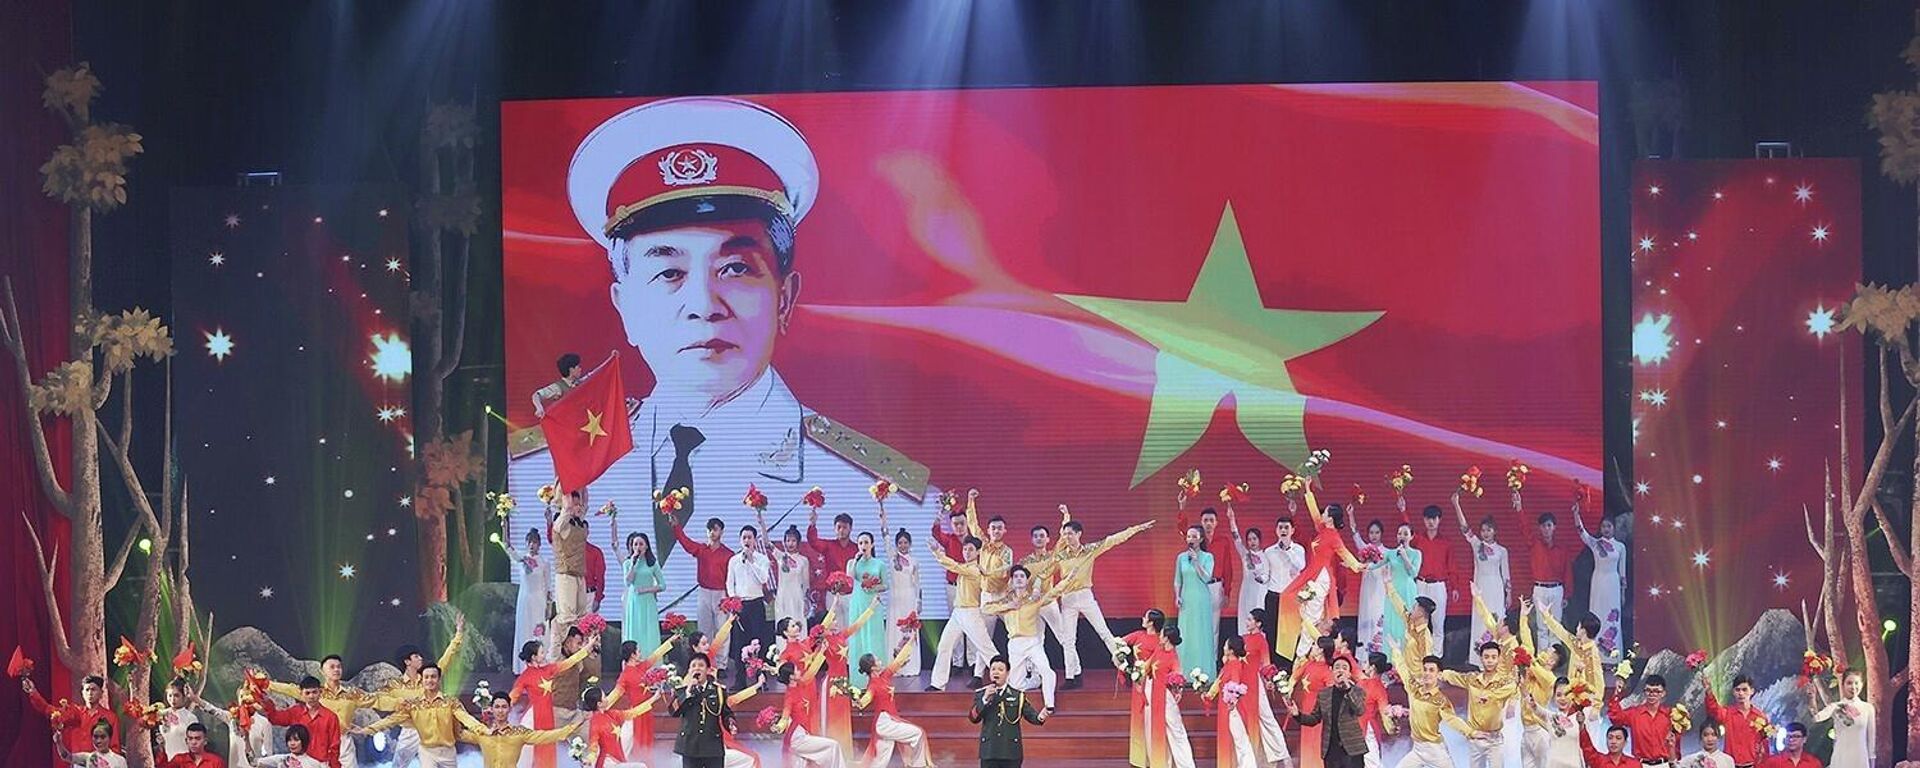 Chương trình nghệ thuật kỷ niệm 110 năm Ngày sinh Đại tướng Võ Nguyên Giáp - Sputnik Việt Nam, 1920, 22.12.2021